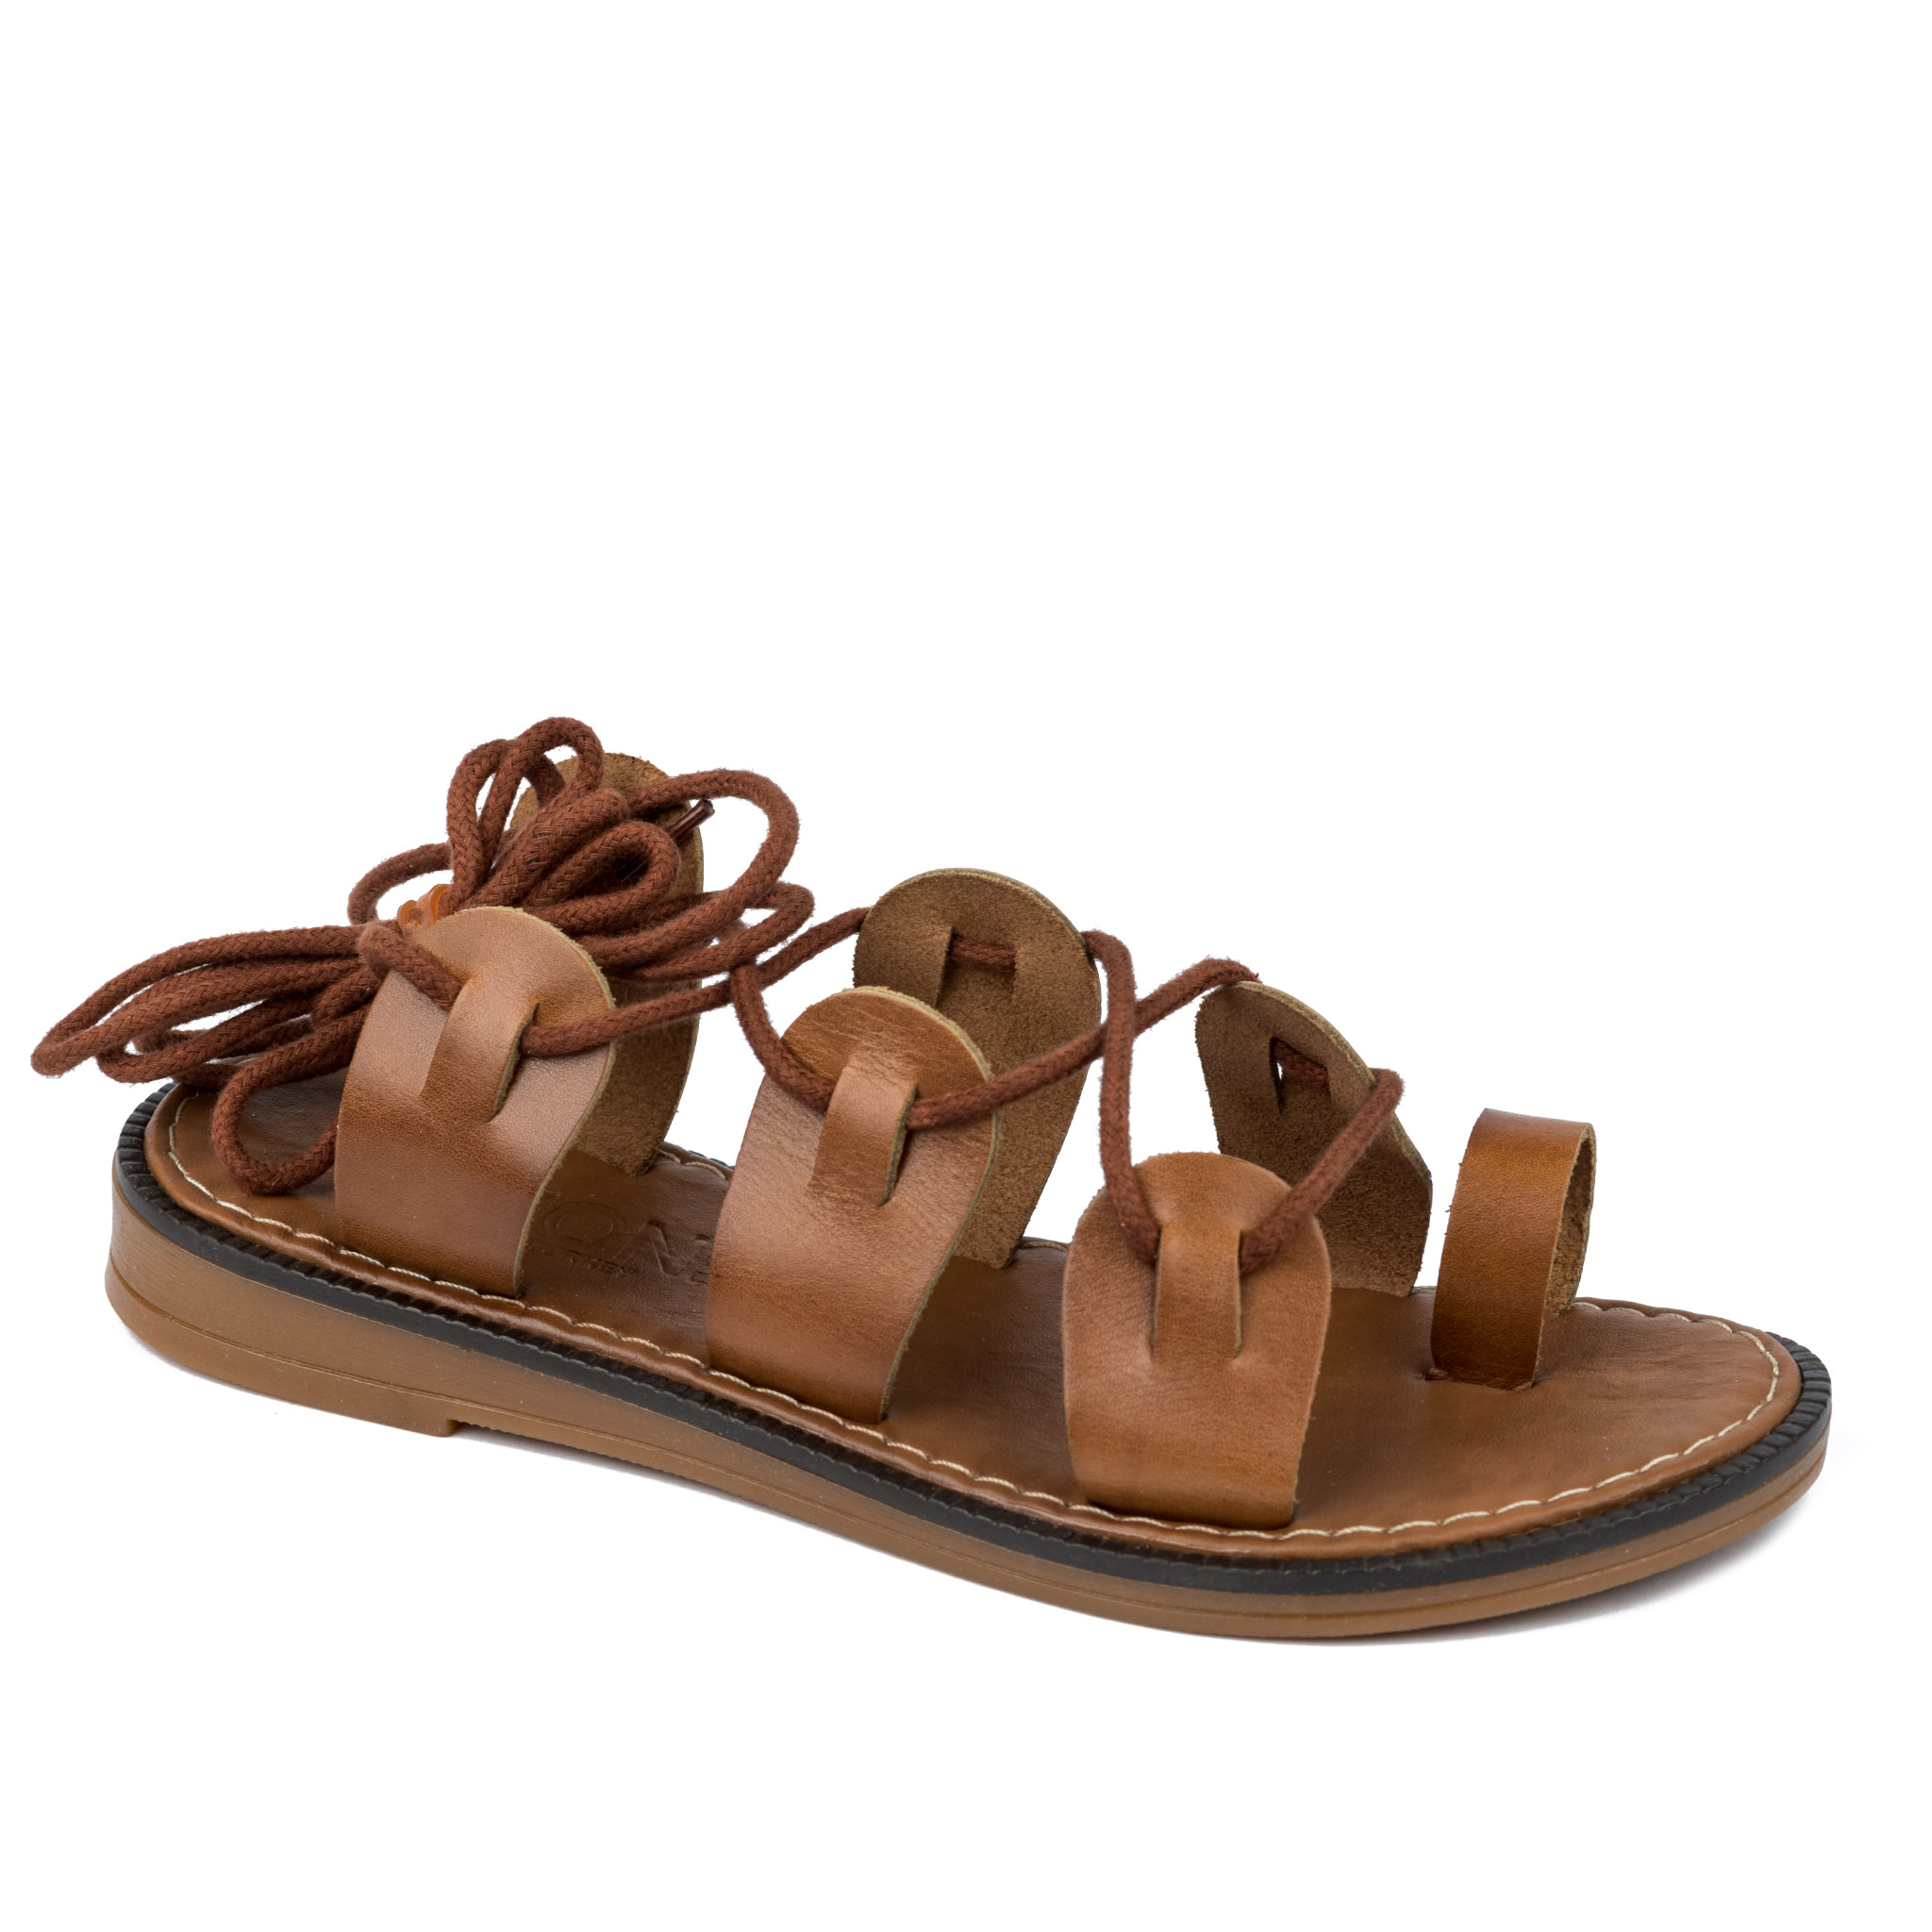 Women sandals A262 - CAMEL